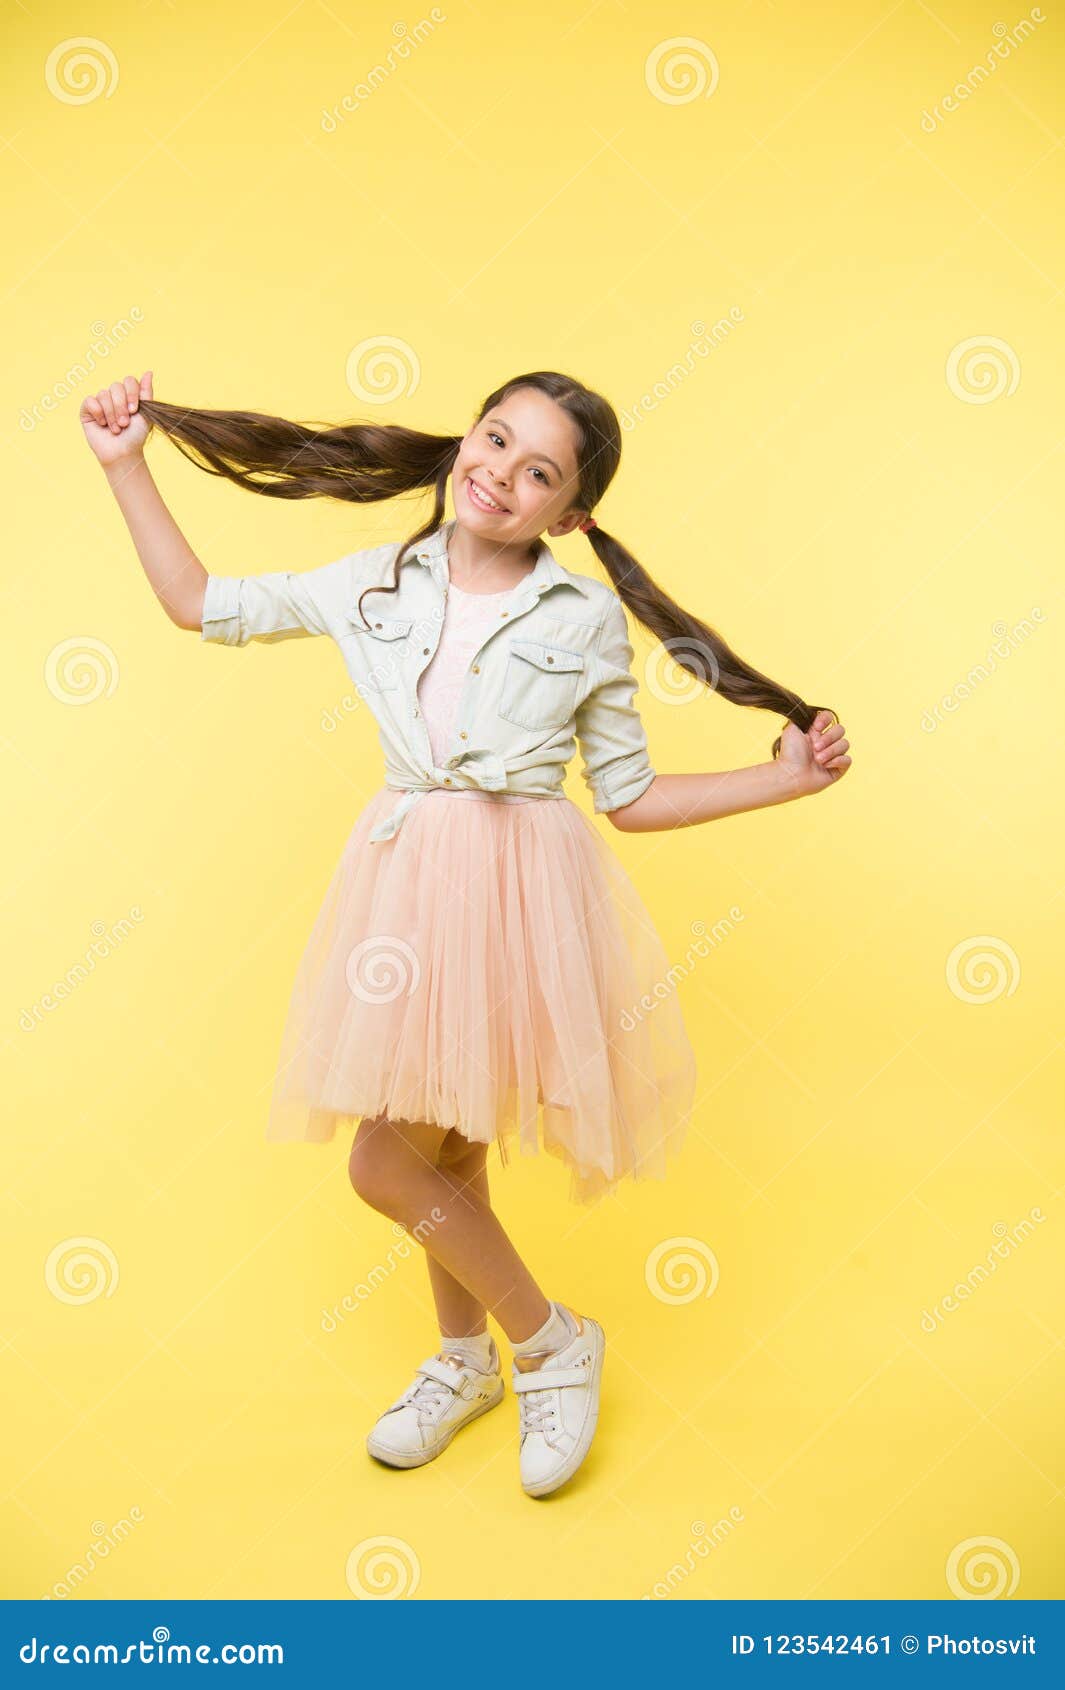 Long Hair Tips For Kids Kid Girl Charming Ponytail